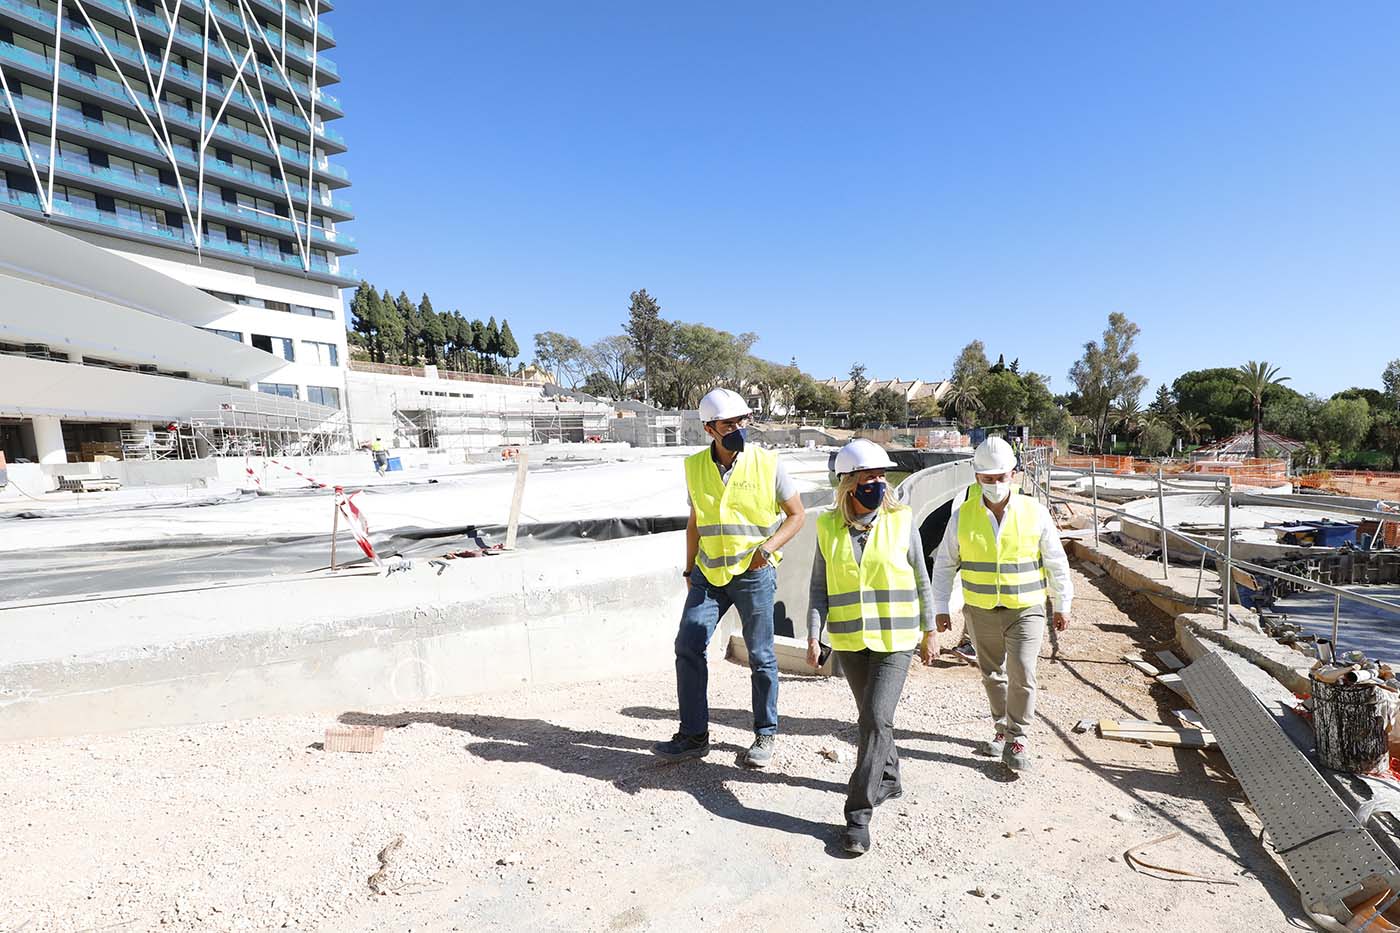 La alcaldesa señala que la apertura del hotel Club Med Magna Marbella “refuerza la oferta complementaria de calidad y va a suponer un revulsivo económico para la ciudad”